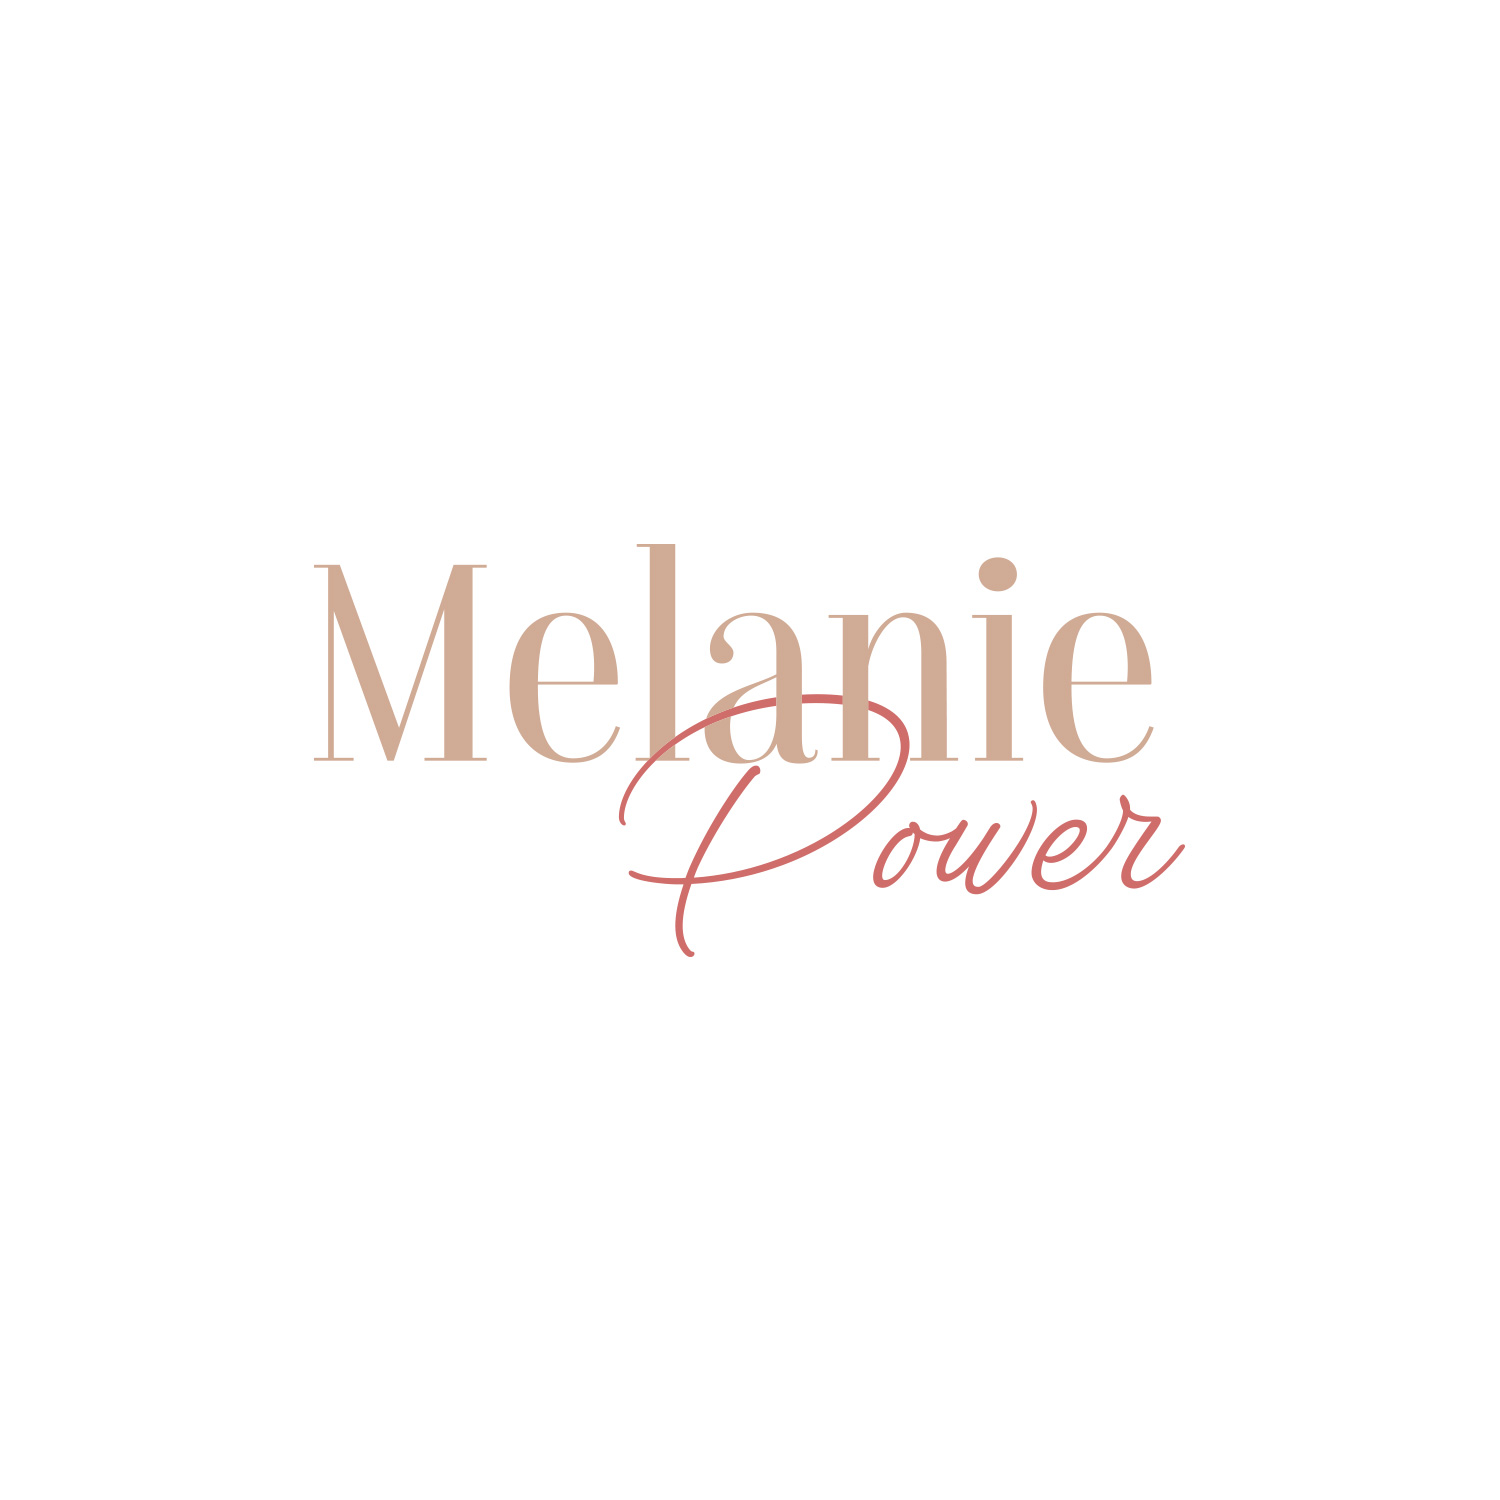 Melanie Power